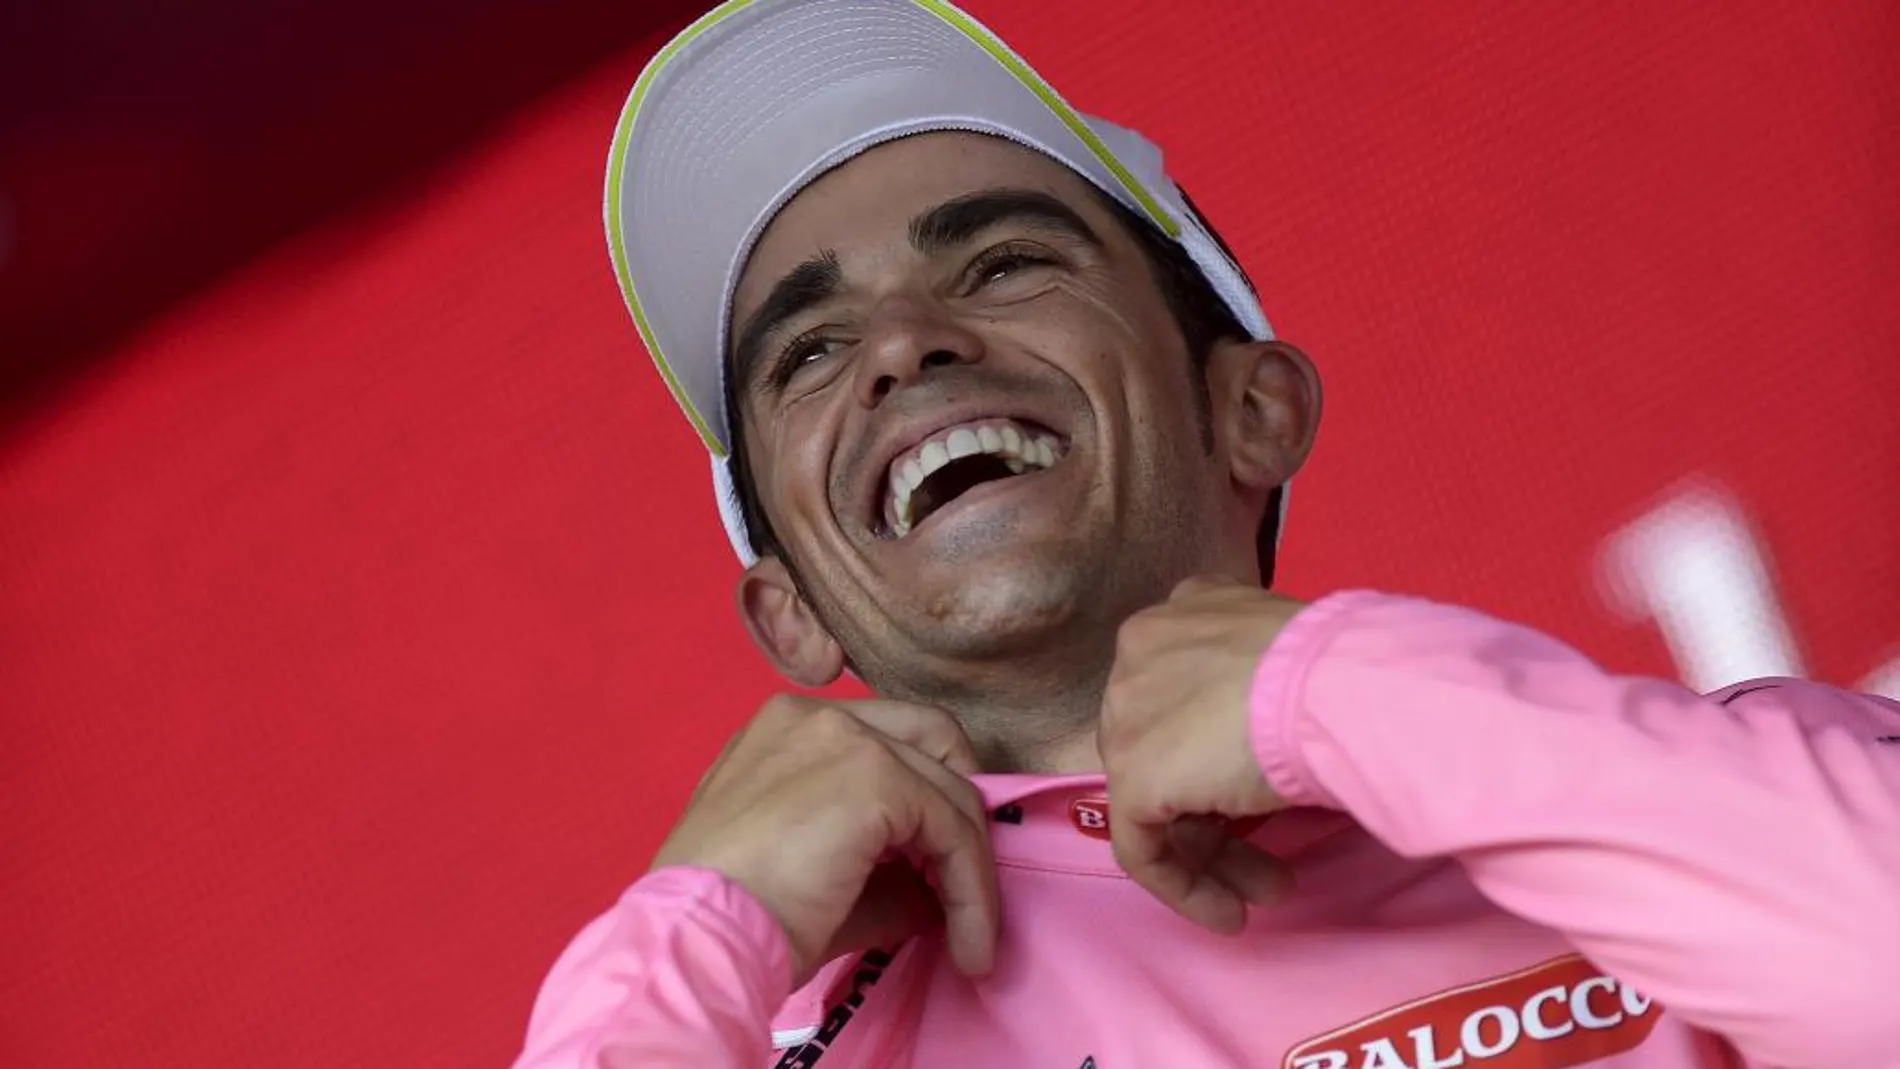 Alberto Contador se coloca la maglia rosa.